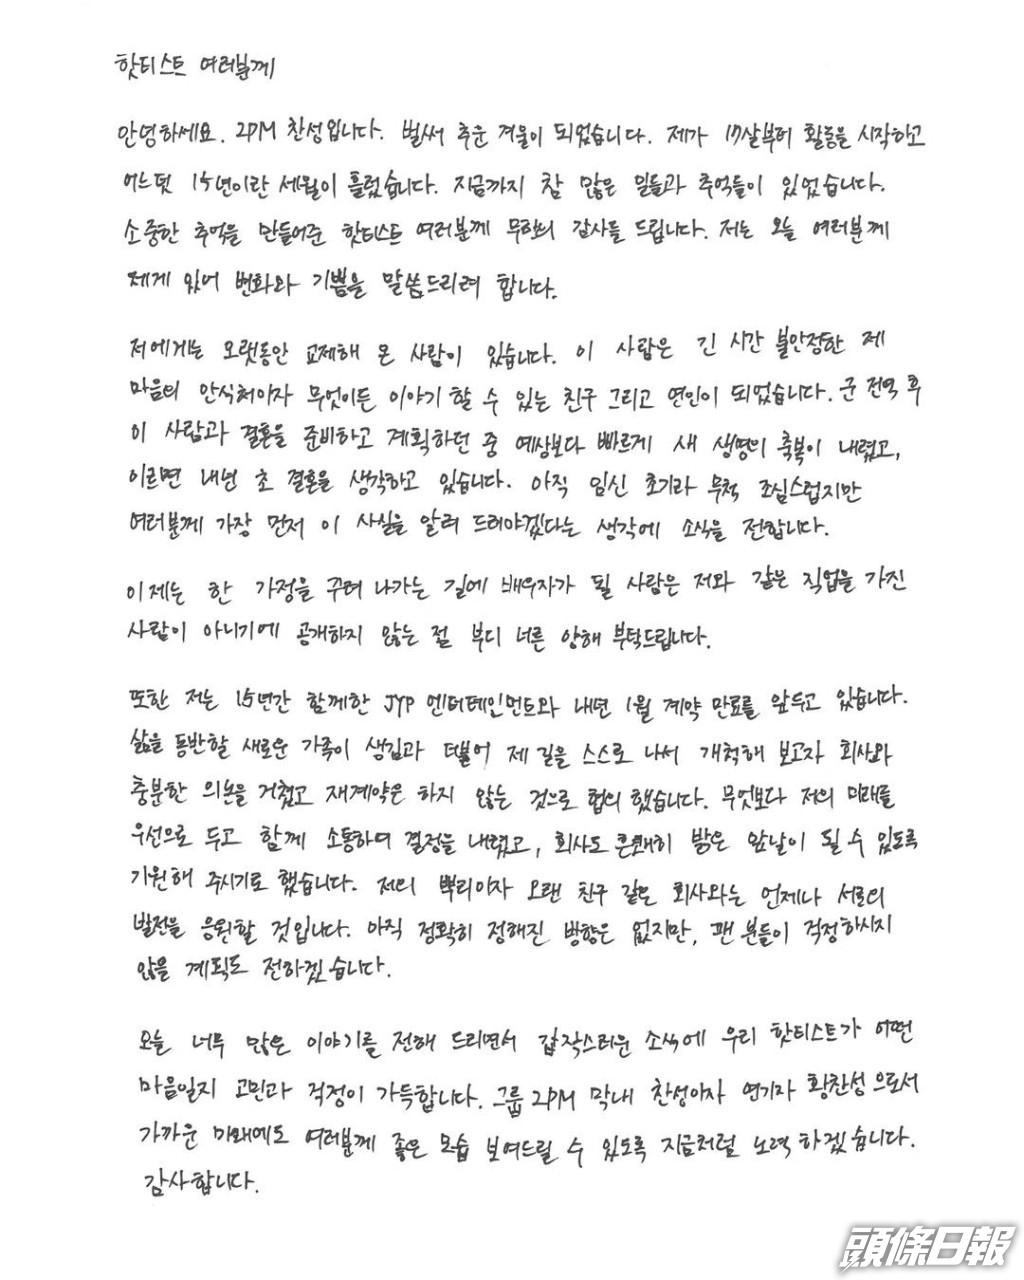 燦盛去年底以親筆信一次公佈奉子成婚及離巢JYP。